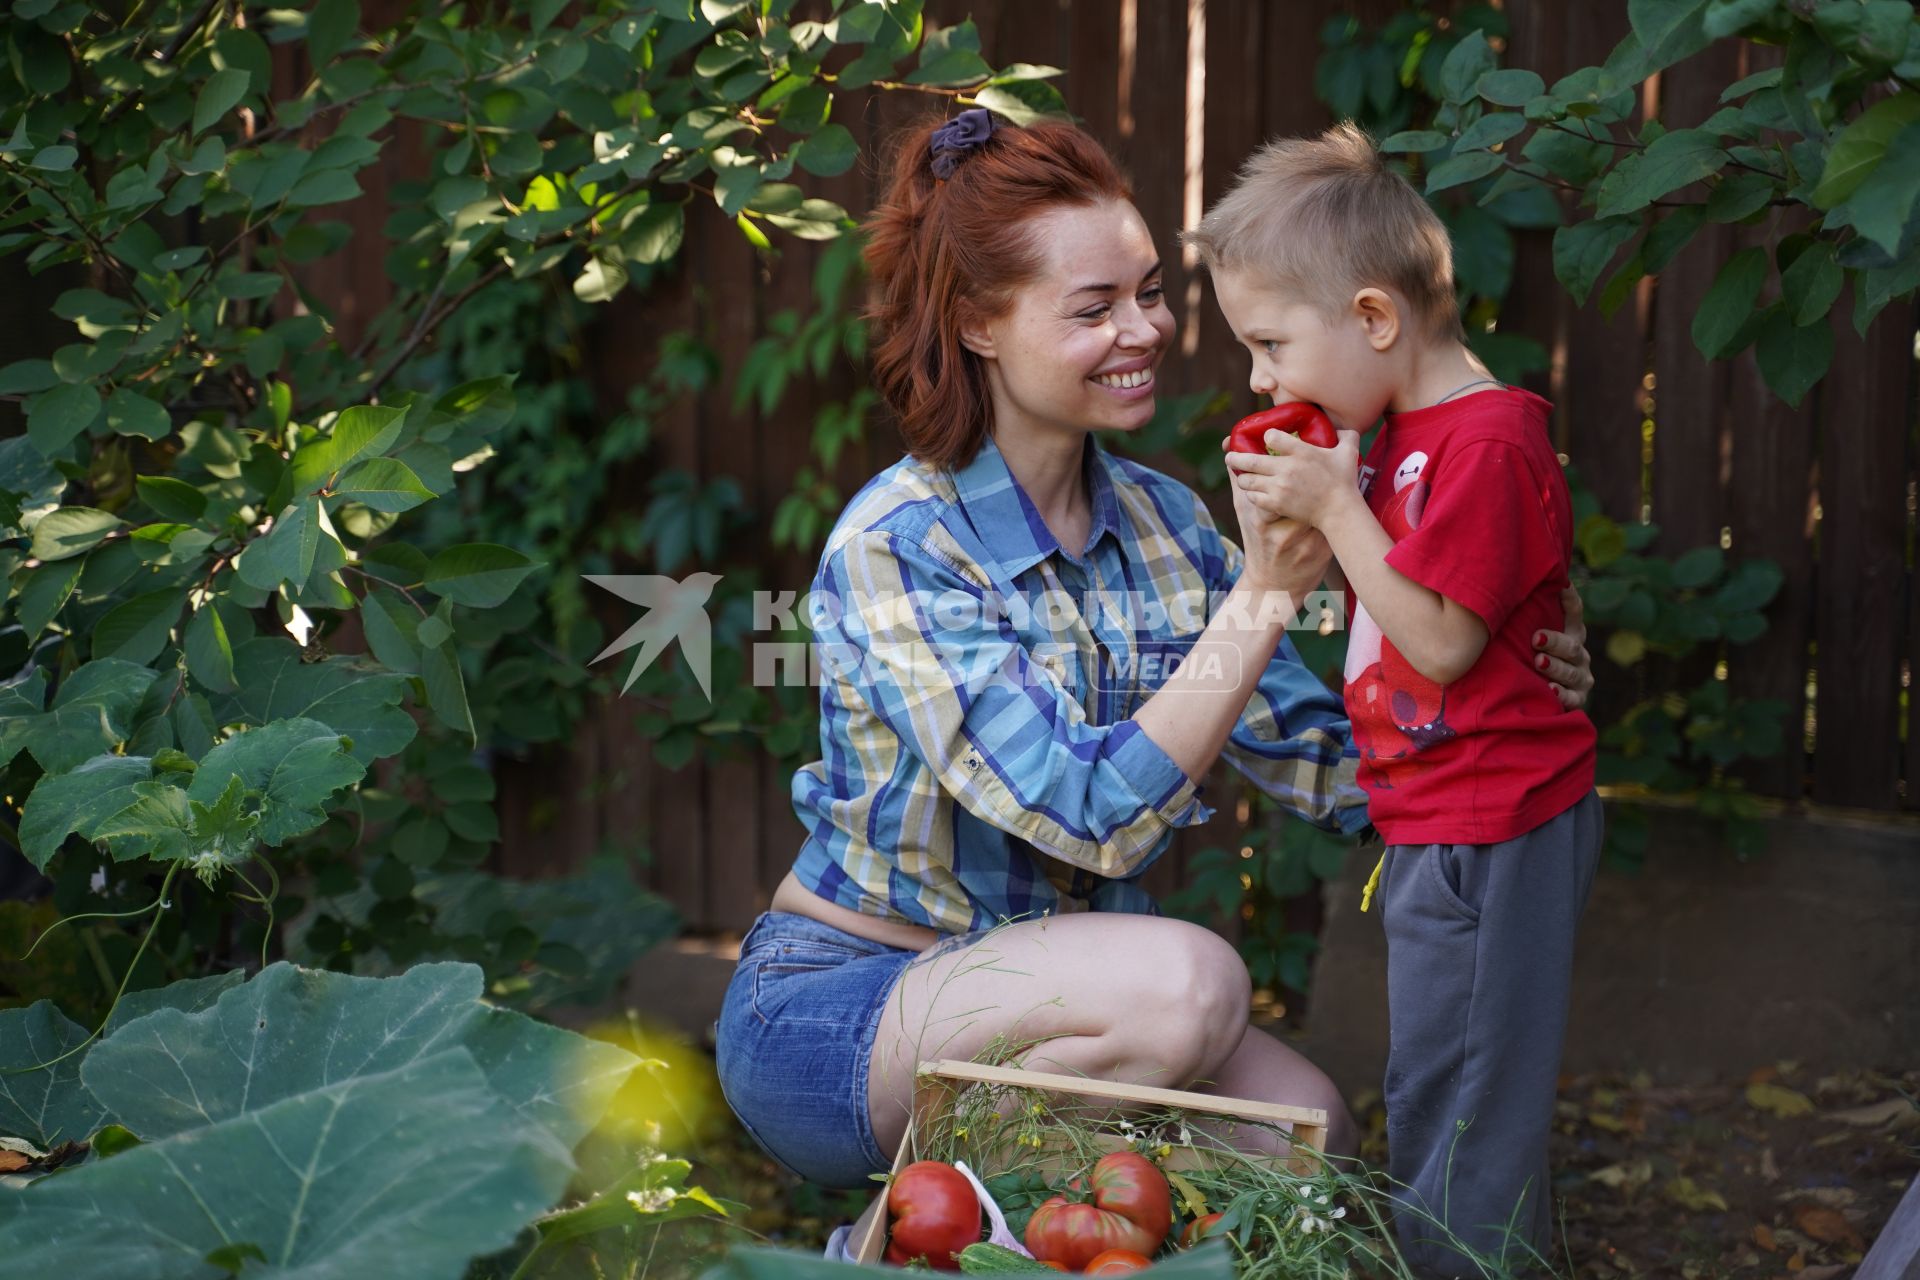 Самара. Женщина с мальчиком  собирают урожай овощей.